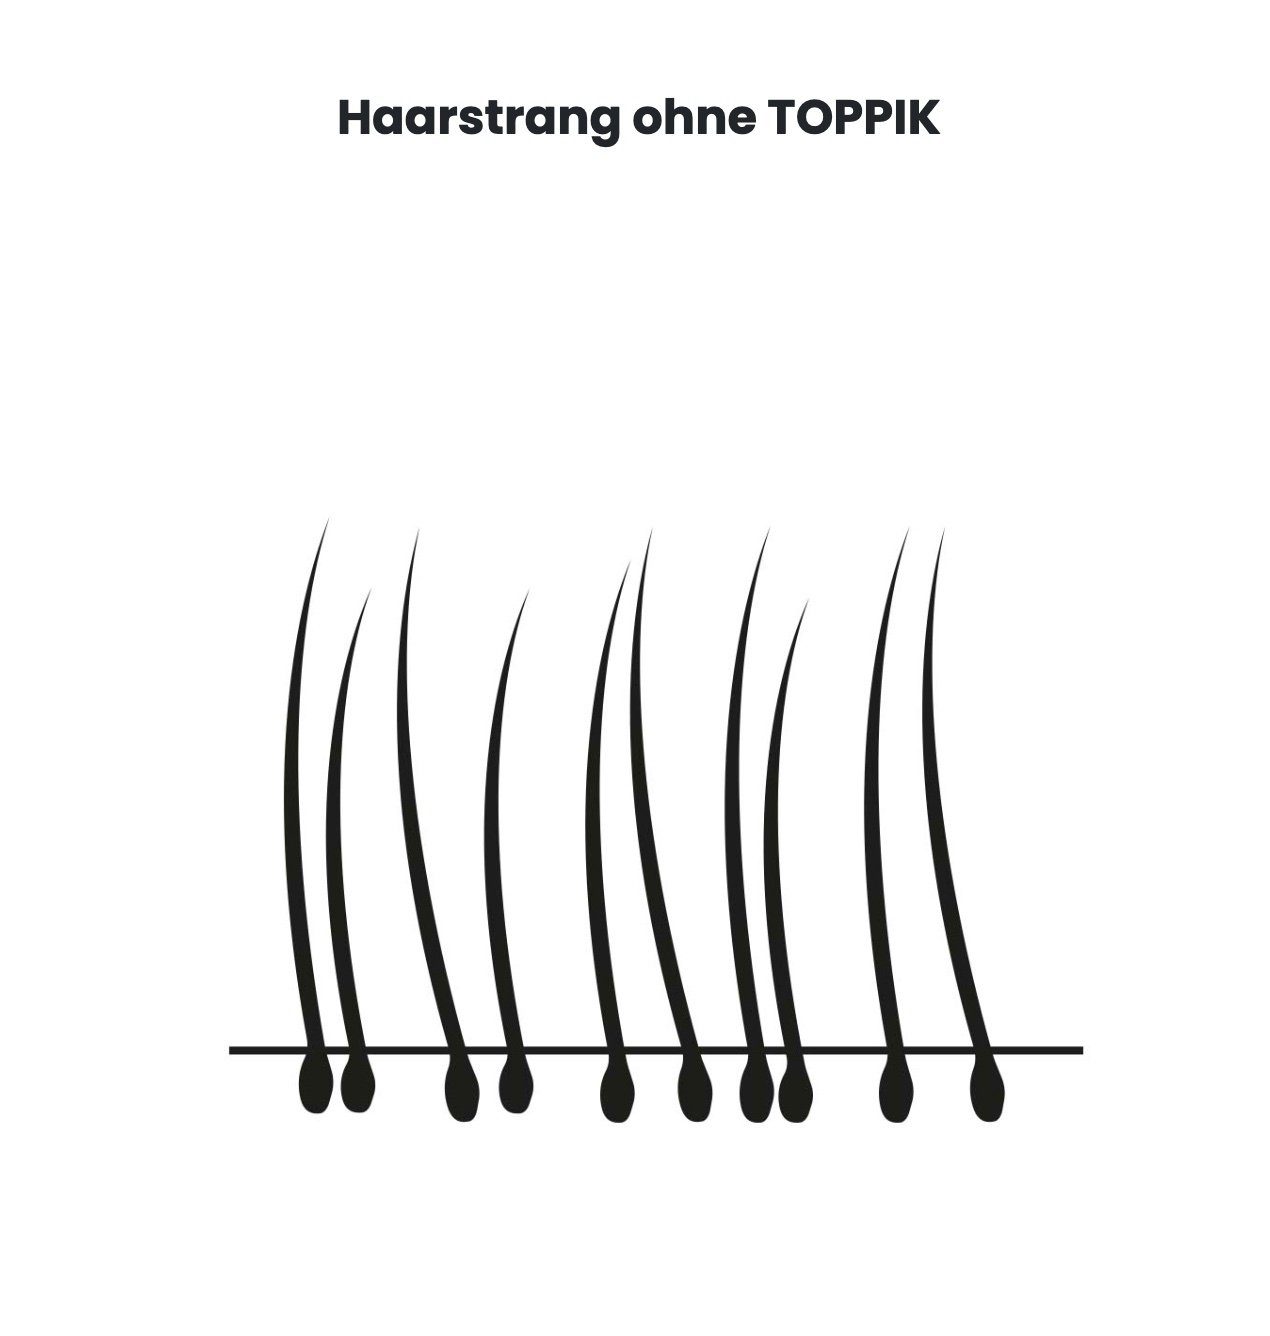 TOPPIK Haarstyling-Set TOPPIK 55 g. Puder, Hair Haarverdichtung, Haarfasern, Streuhaar, Fibers Mittelblond Schütthaar, 